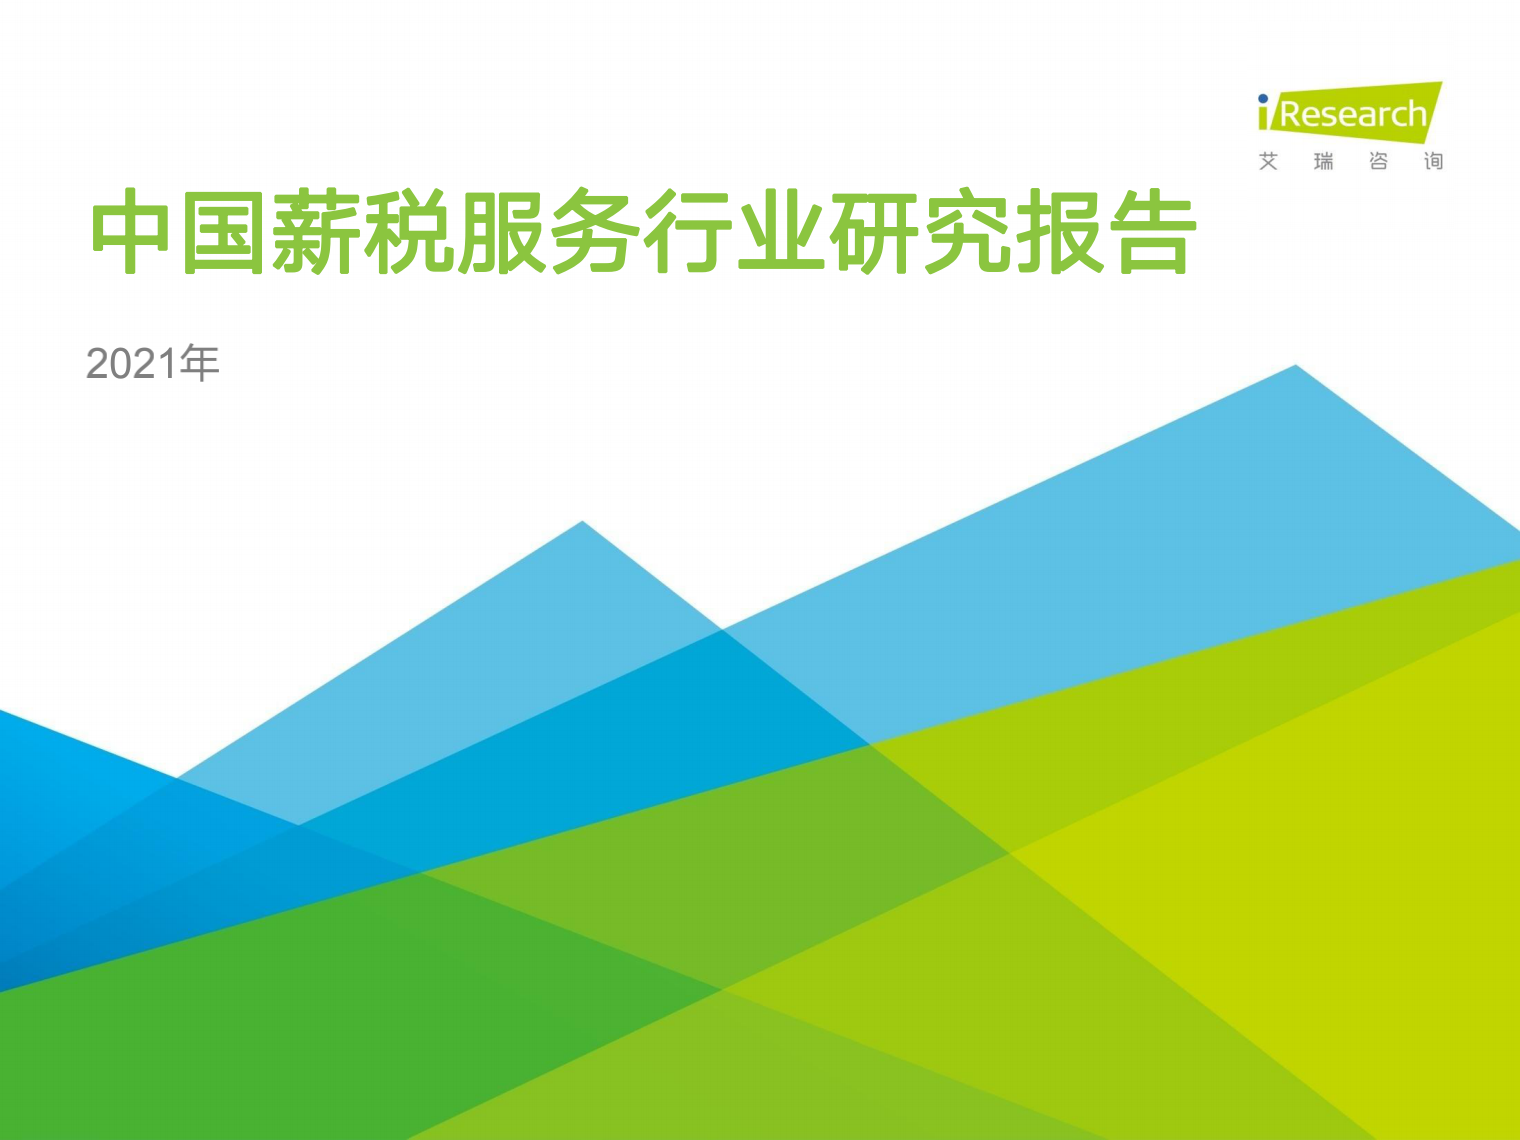 众合云科入选艾瑞咨询《2021年中国薪税服务行业研究报告》优秀服务商案例